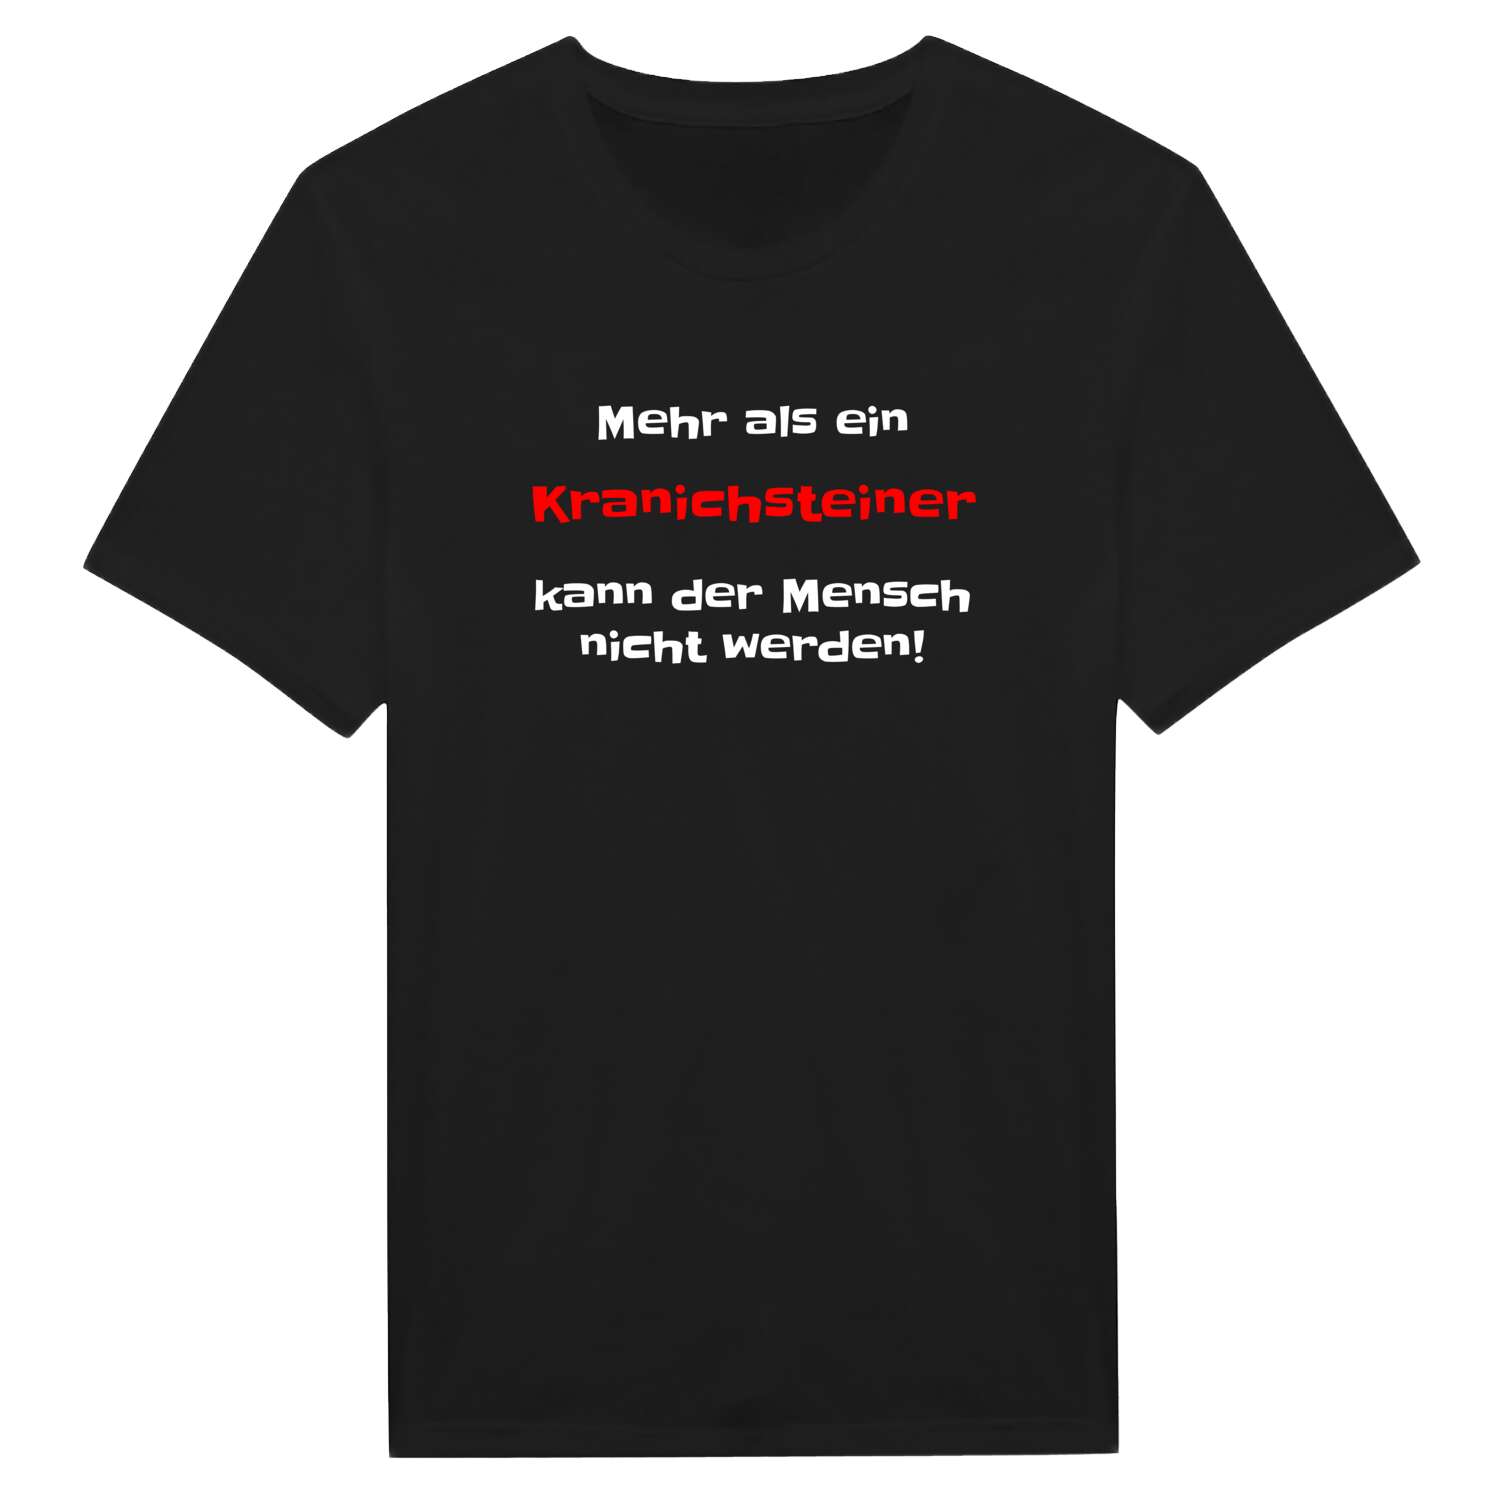 Kranichstein T-Shirt »Mehr als ein«